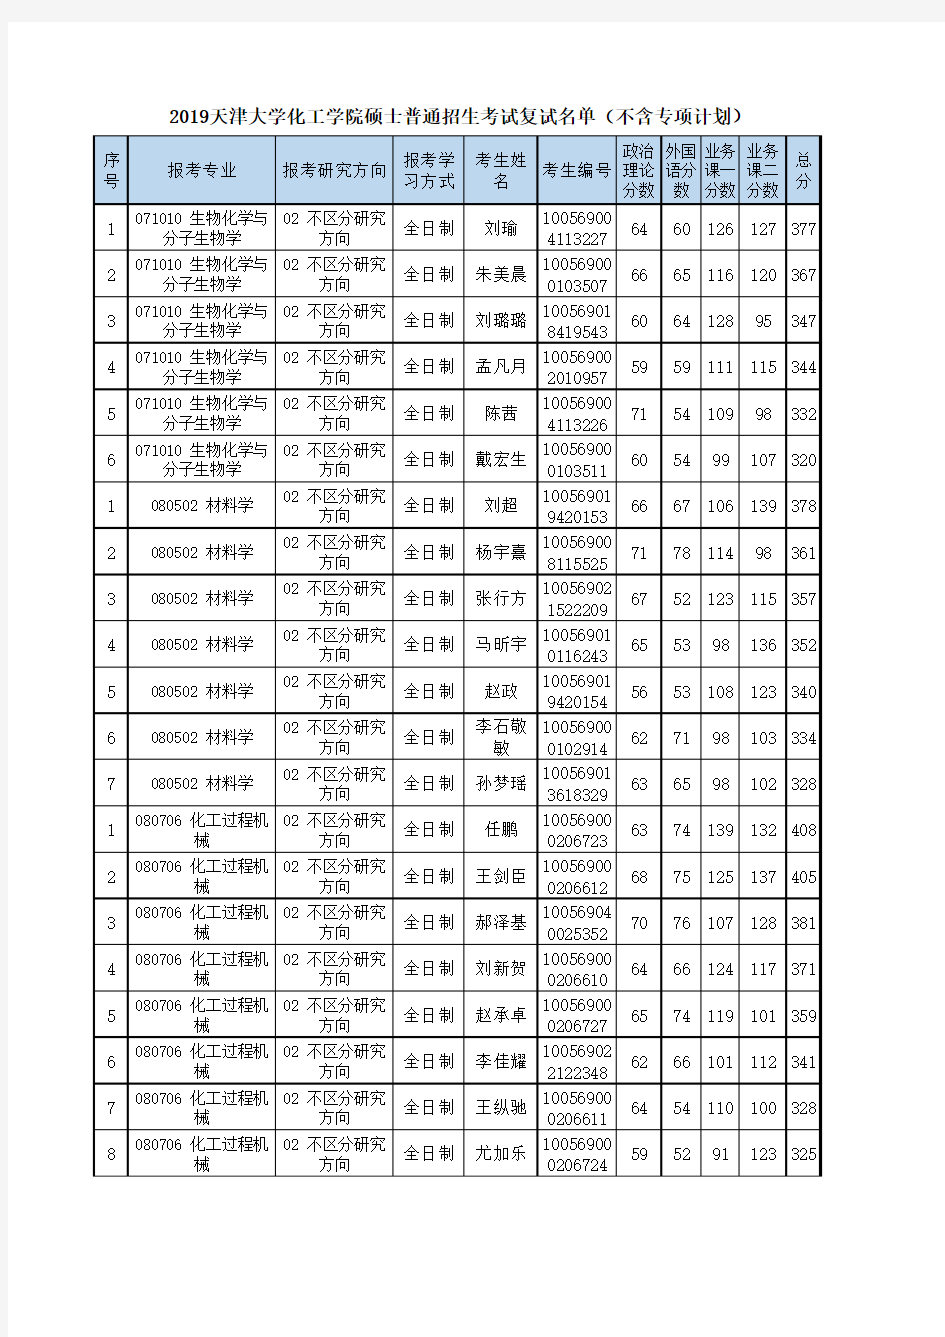 2019天津大学化工学院硕士普通招生考试复试名单